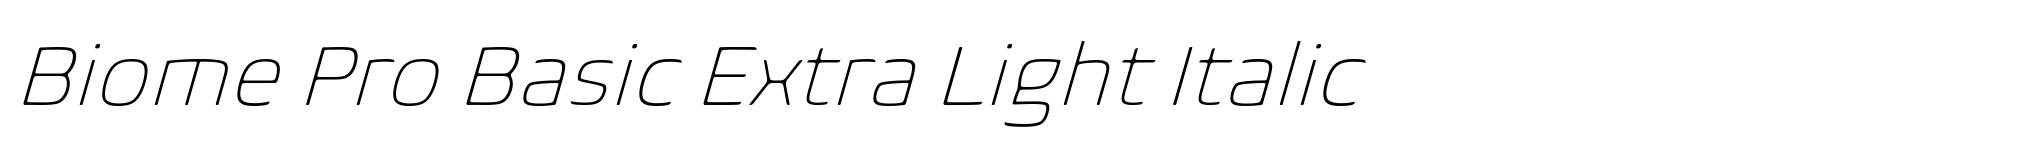 Biome Pro Basic Extra Light Italic image